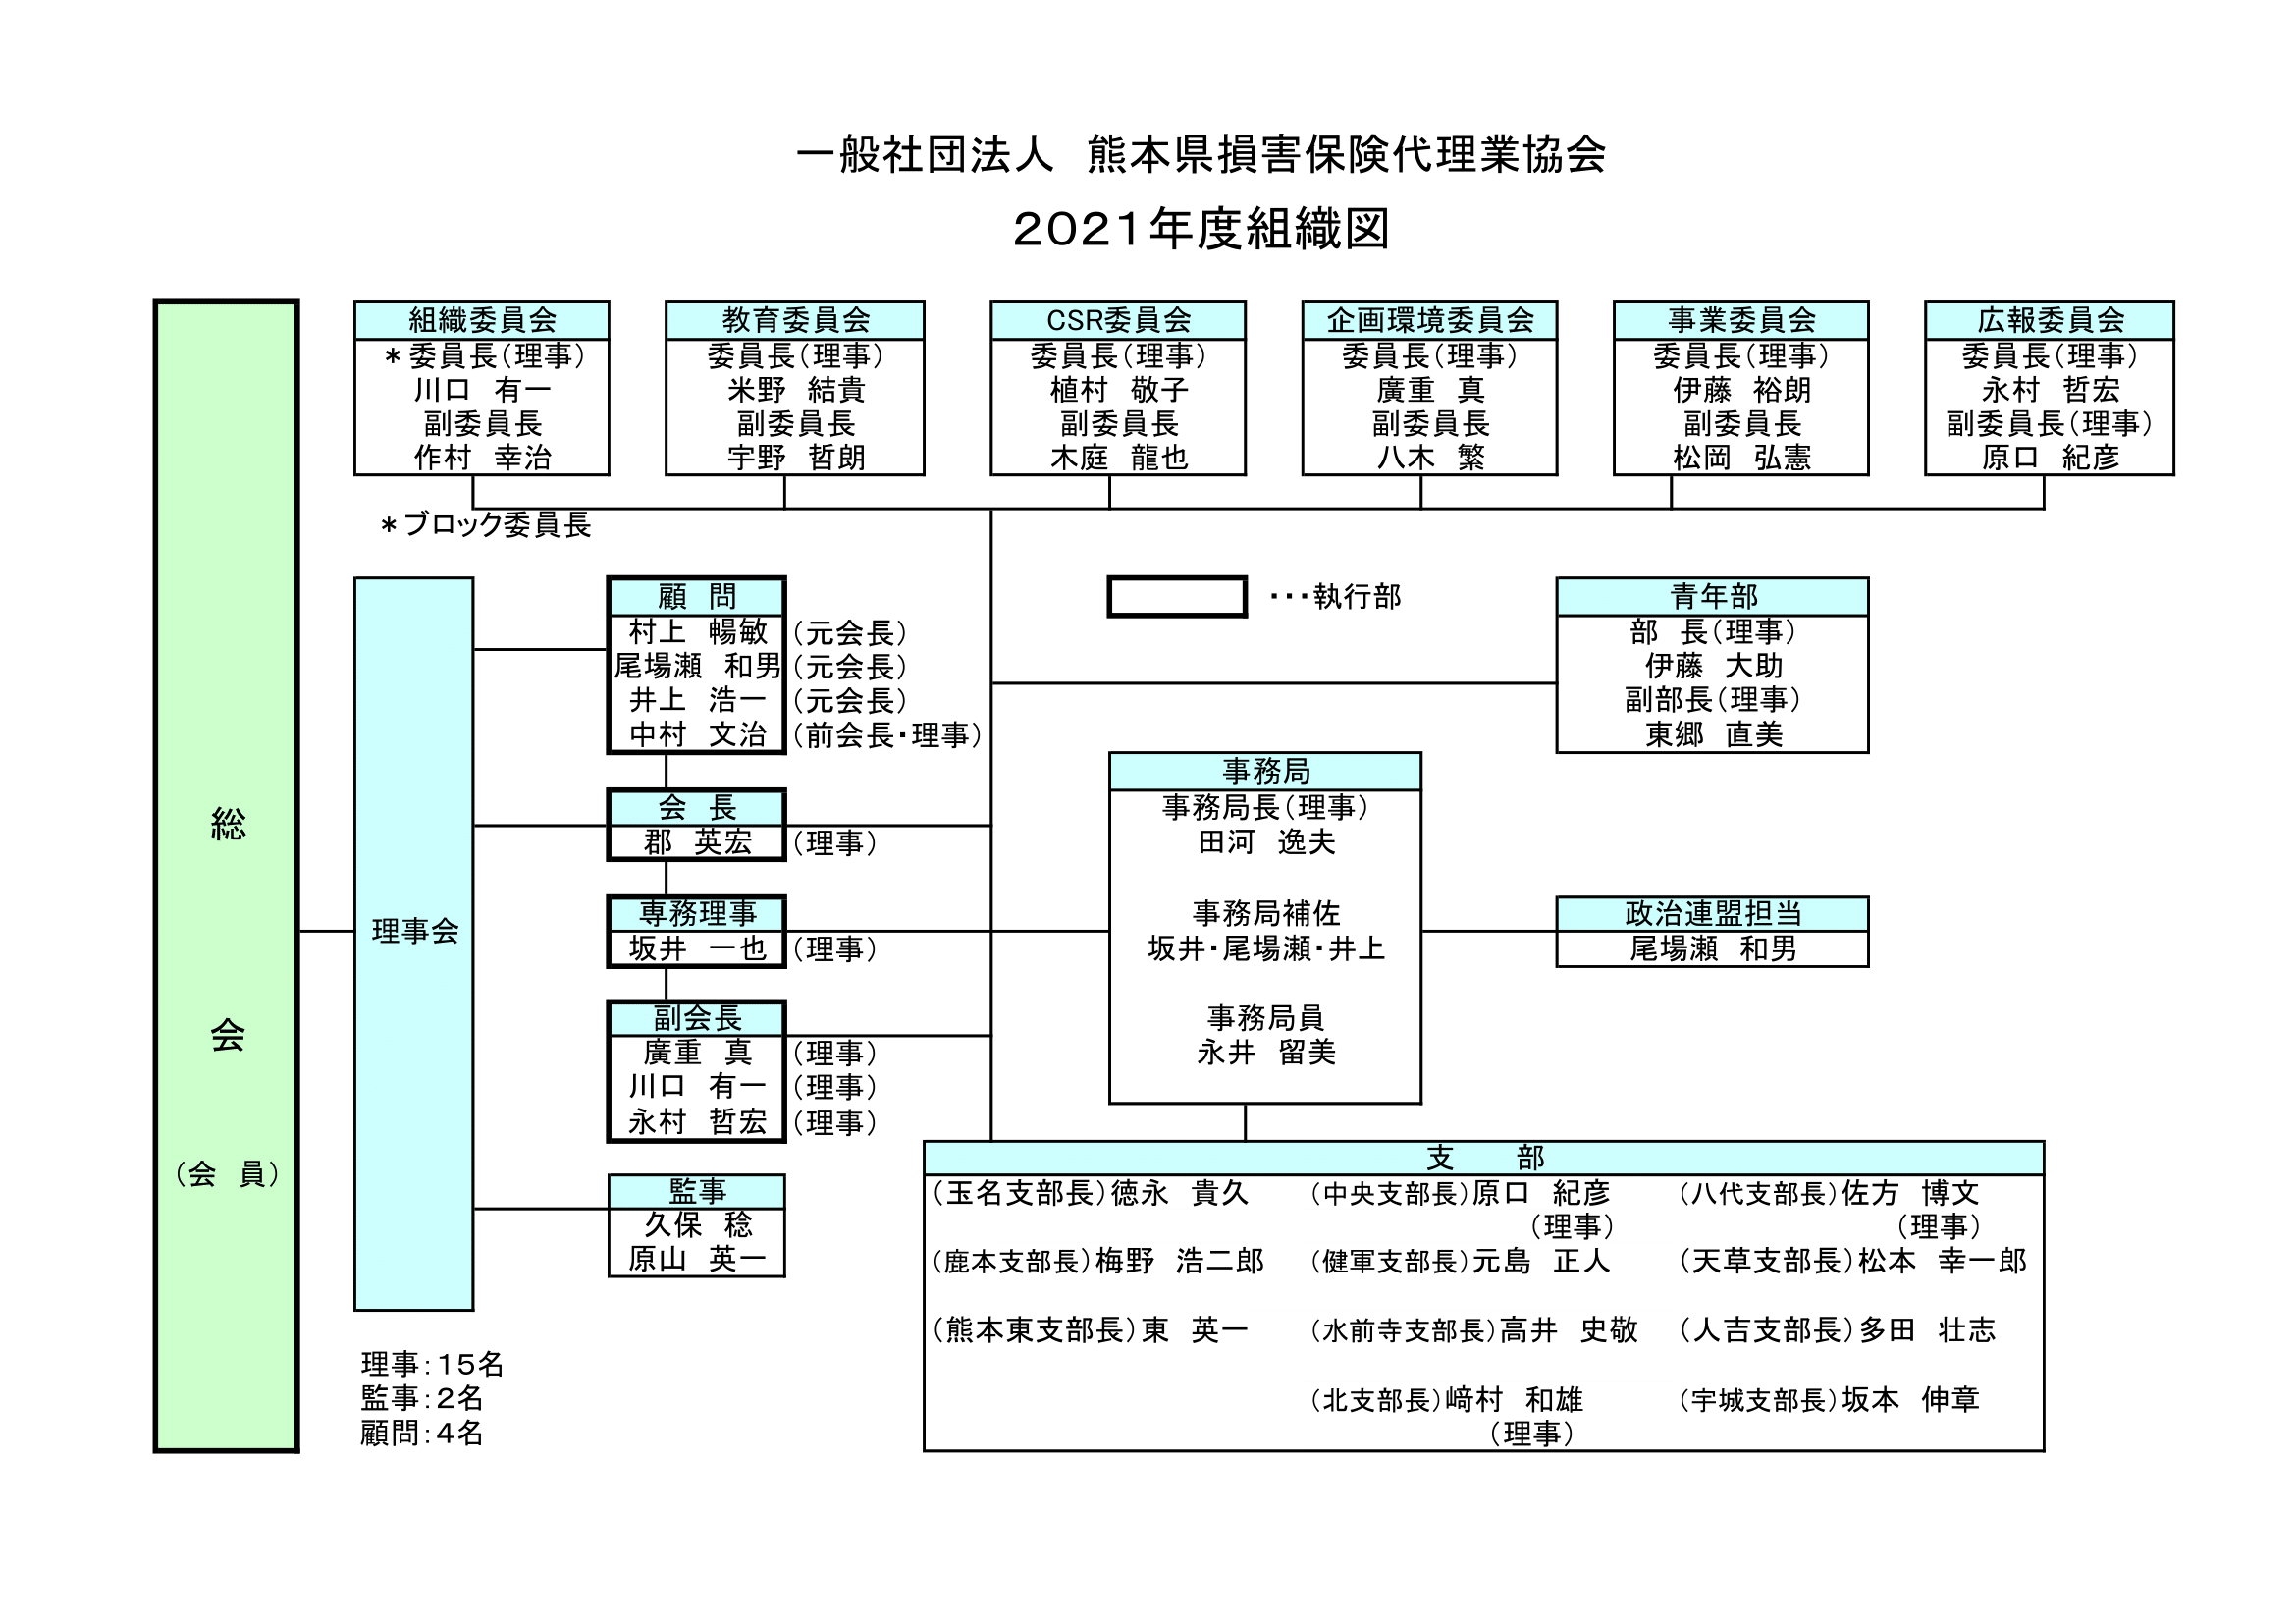 2021年度-熊本県損害保険代理業協会組織図